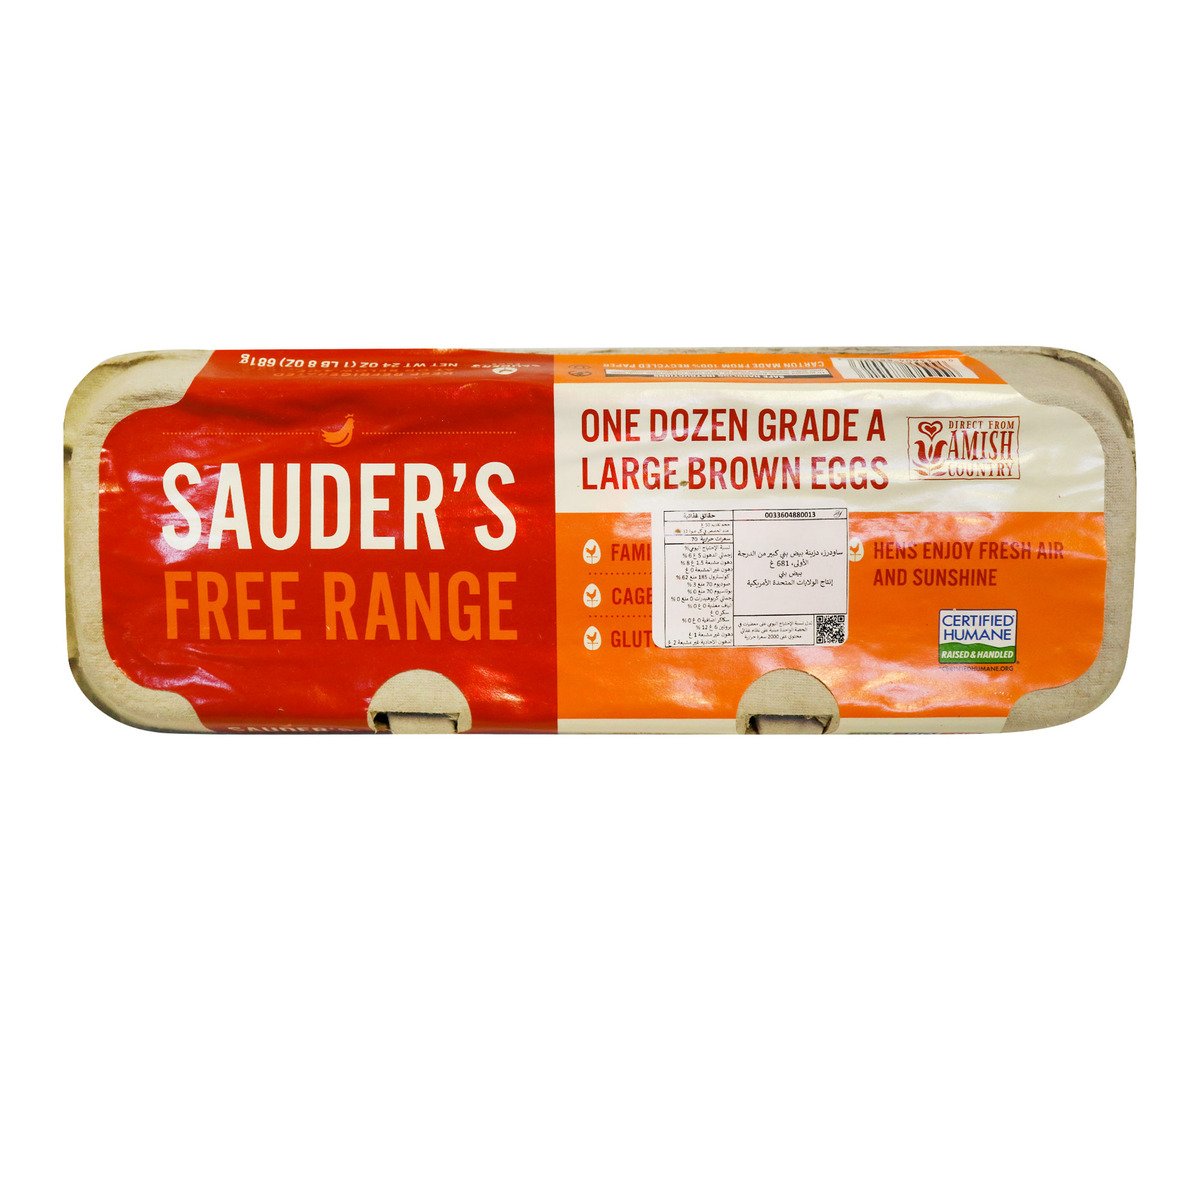 Sauder's Free Range Brown Eggs Large 12pcs